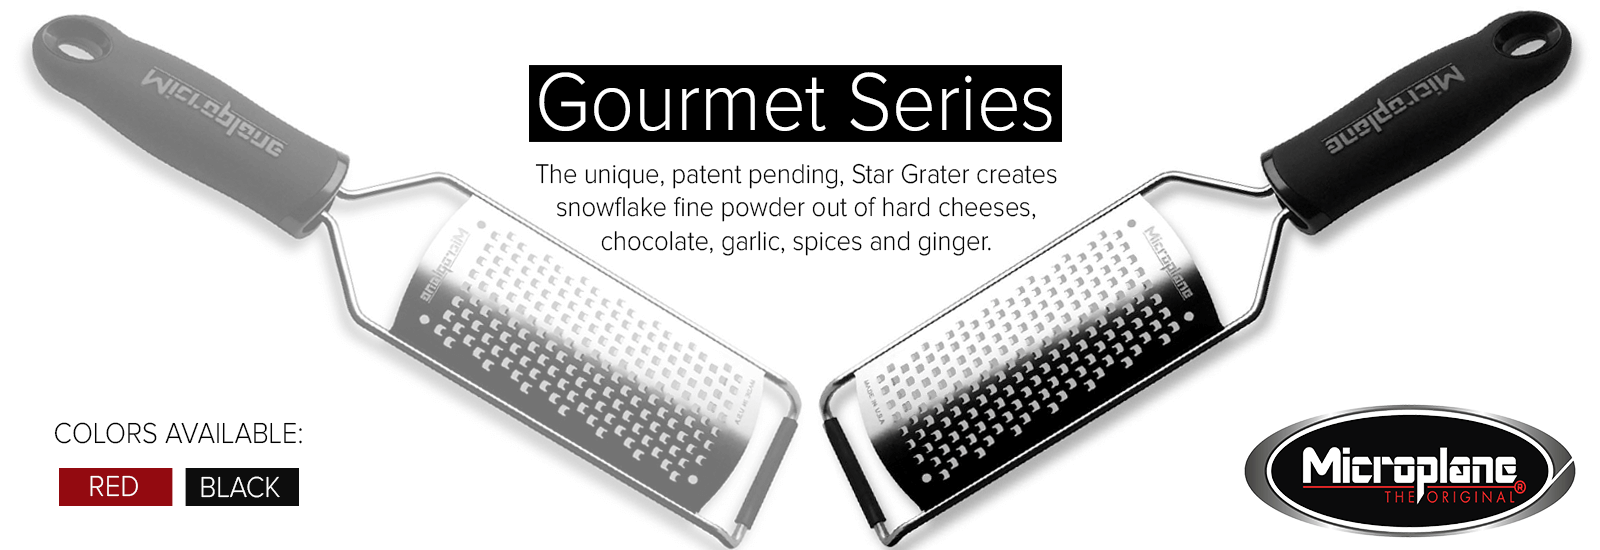 Gourmet Series Parmesan Star Grater- Black